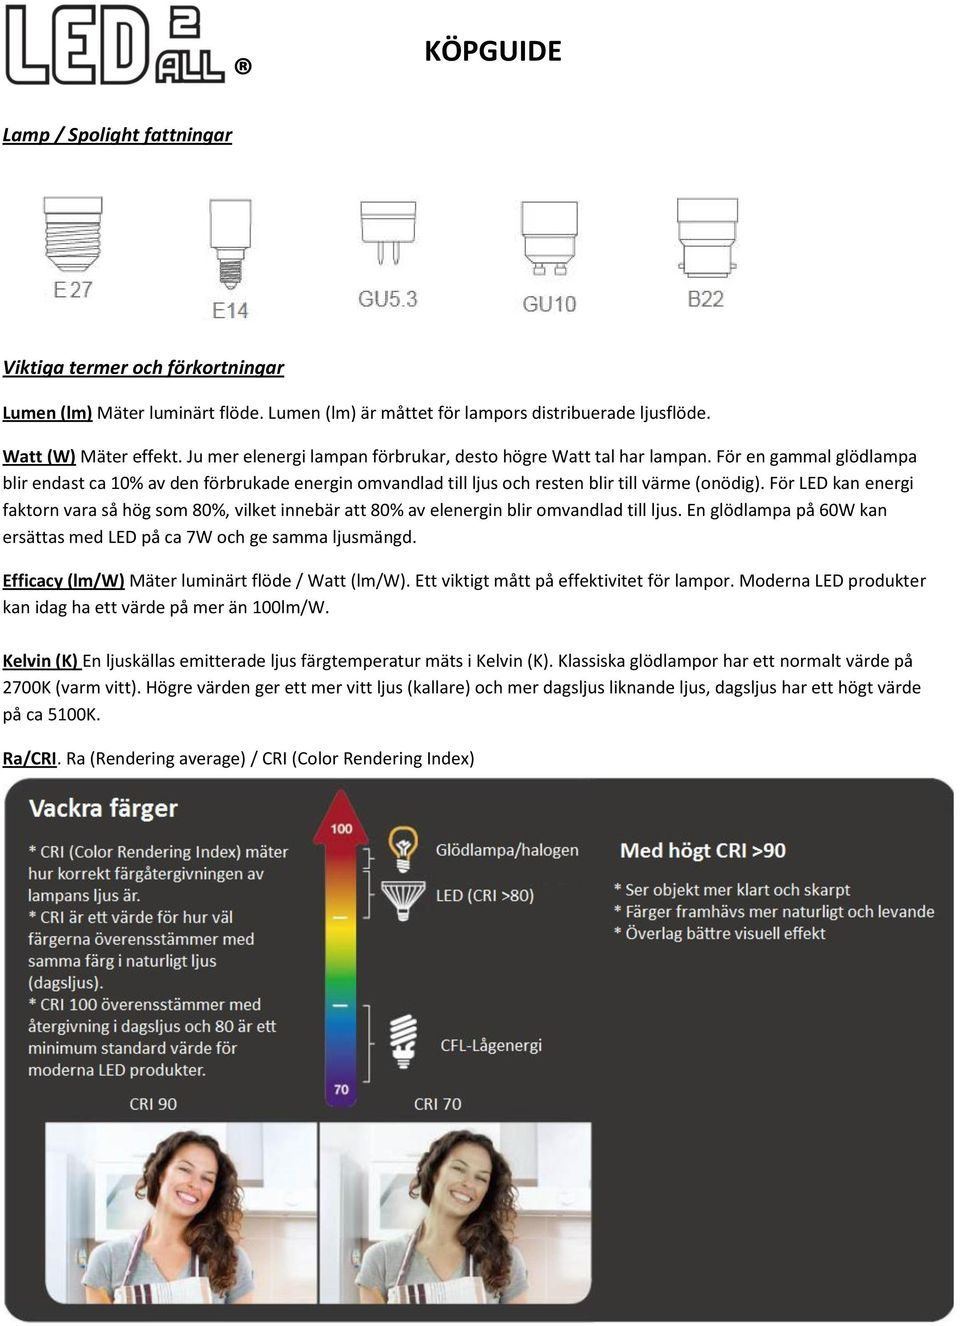 För LED kan energi faktorn vara så hög som 80%, vilket innebär att 80% av elenergin blir omvandlad till ljus. En glödlampa på 60W kan ersättas med LED på ca 7W och ge samma ljusmängd.